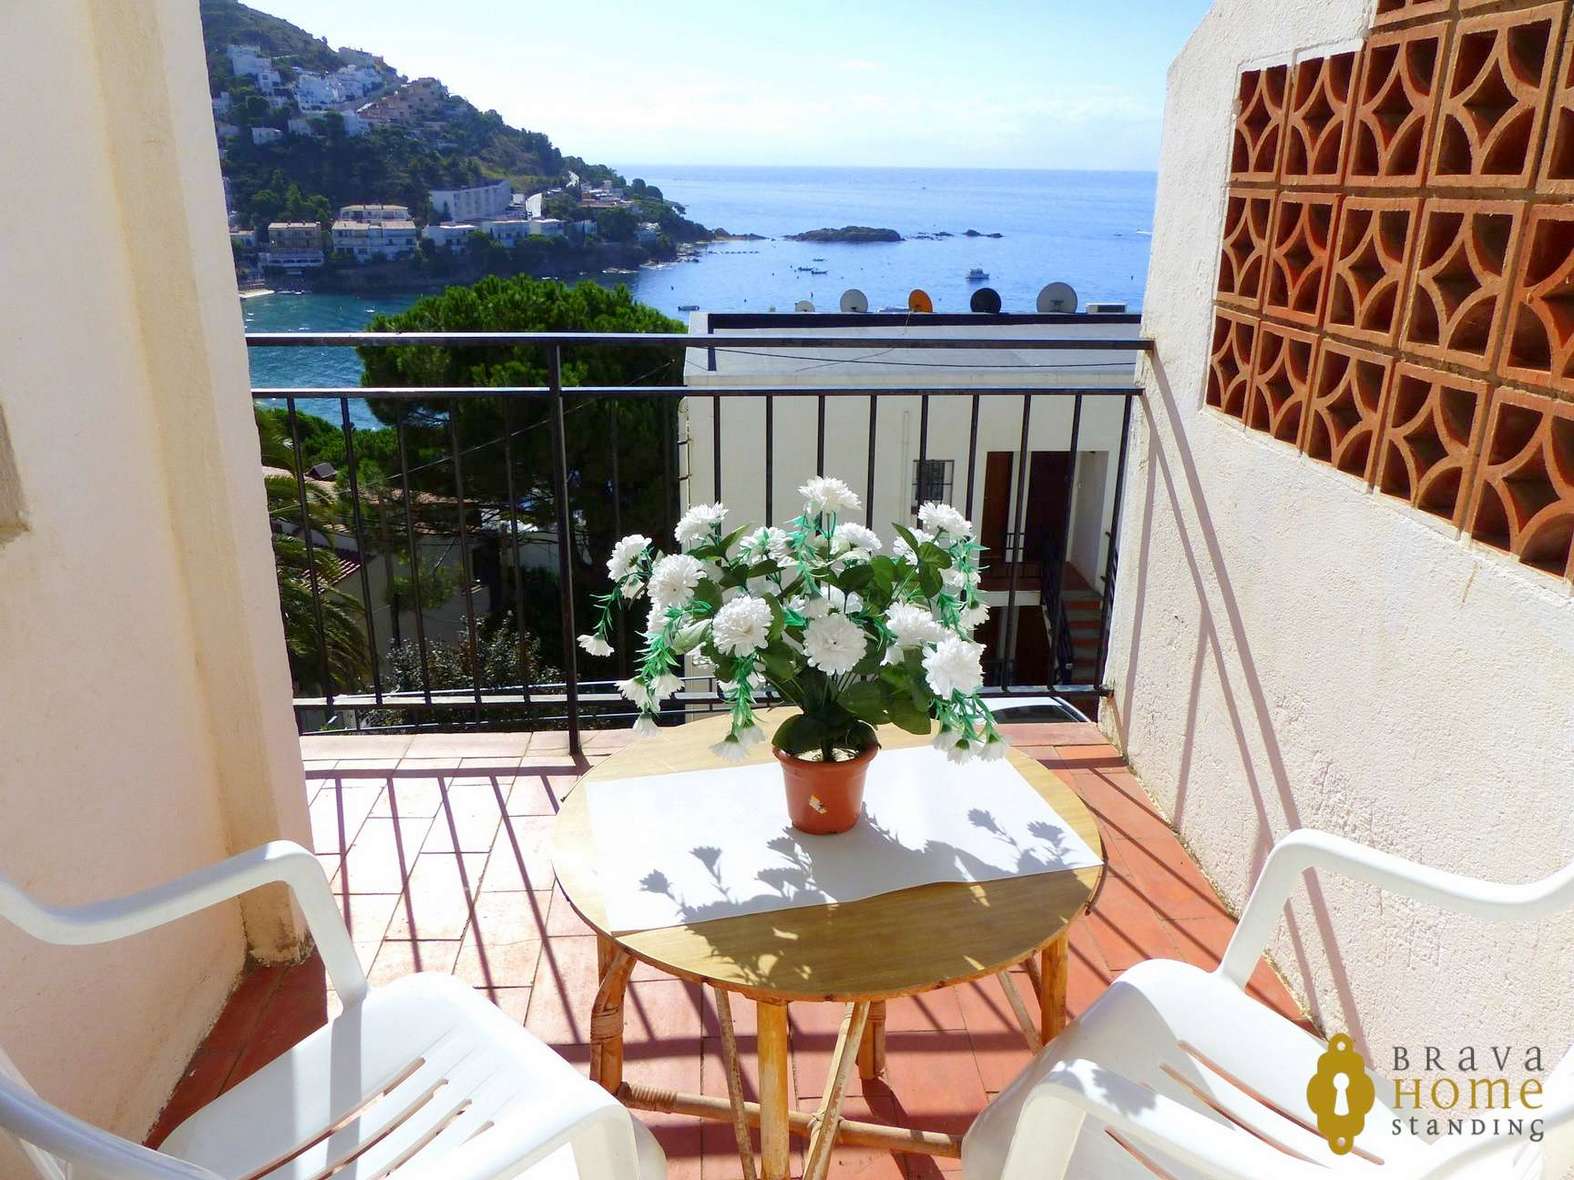 Bel appartement avec une vue splendide sur la mer à vendre à Rosas - Canyelles